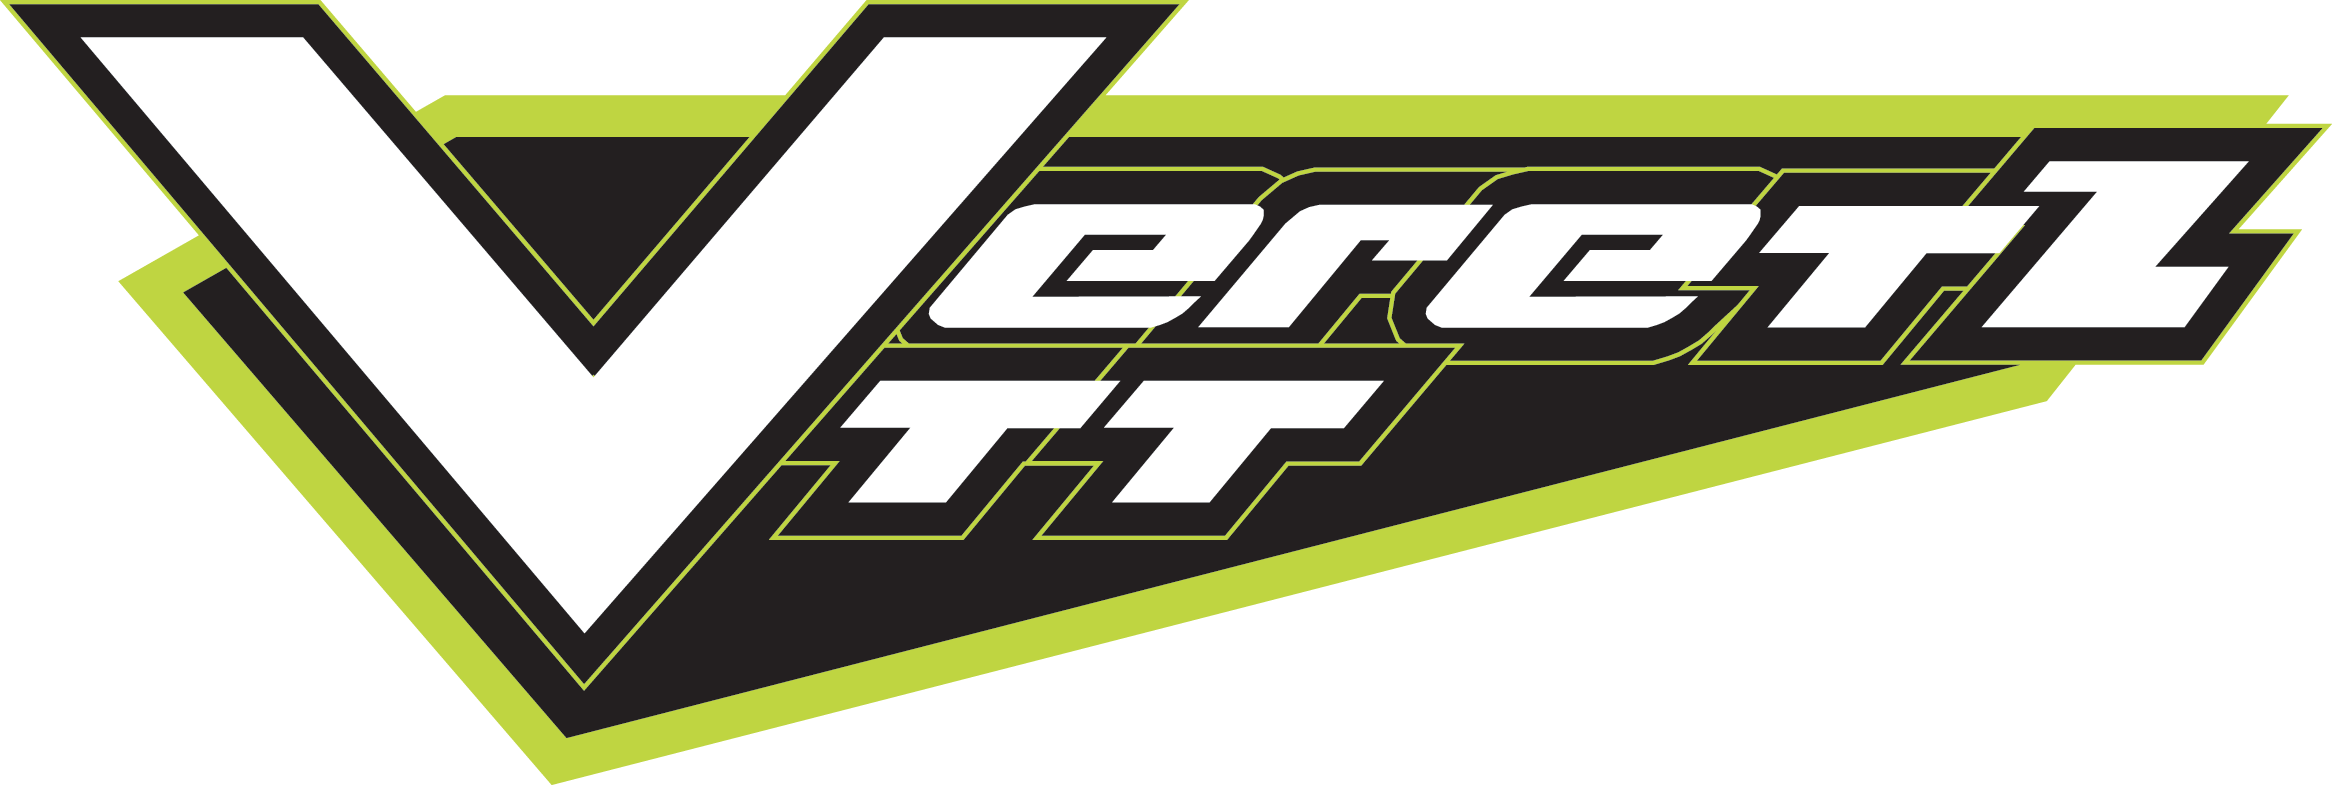 Logo VERETZ VTT